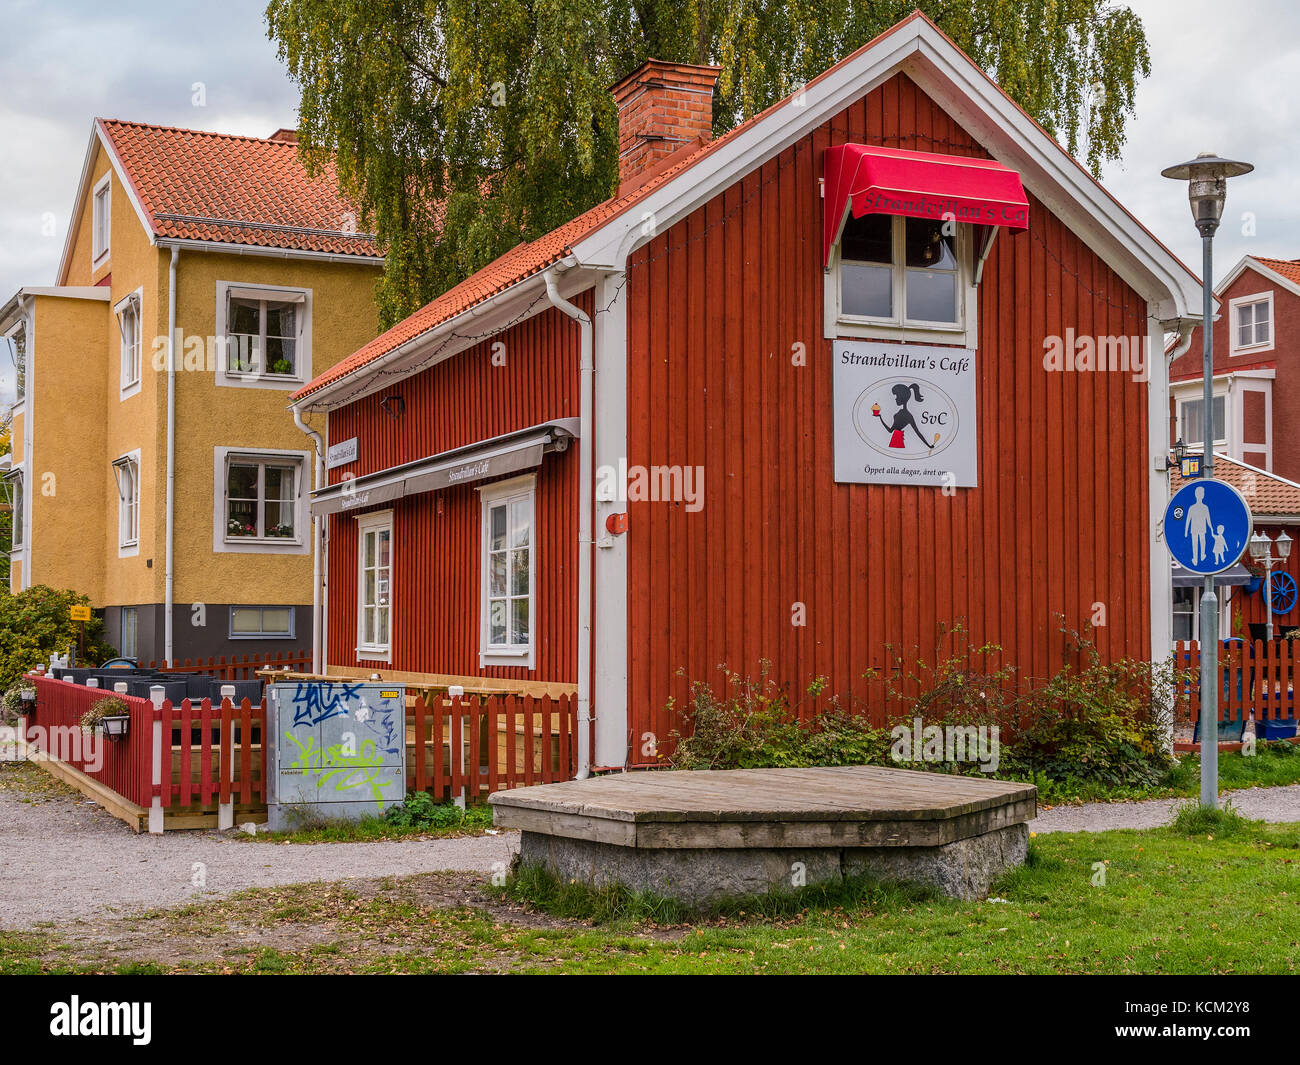 Strandvillan's café in Sigtuna, outside of Märsta, north of Stockholm, Sweden , Europe. Stock Photo